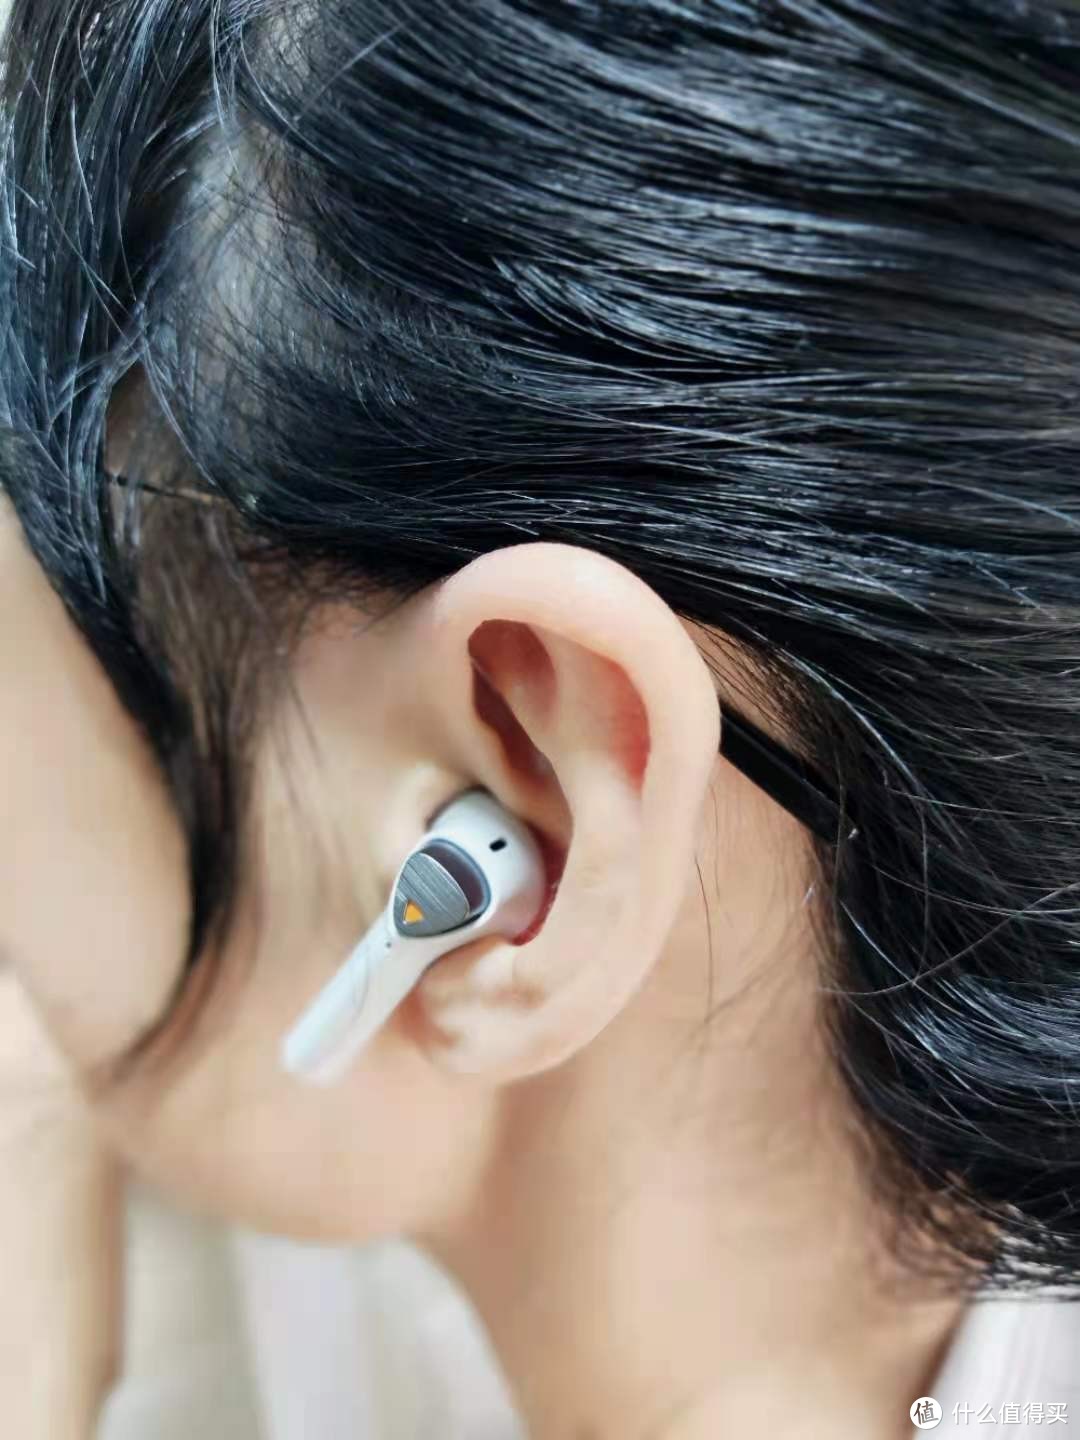 TWS耳机中的一股清流-飞智银狐X1低延迟蓝牙耳机评测